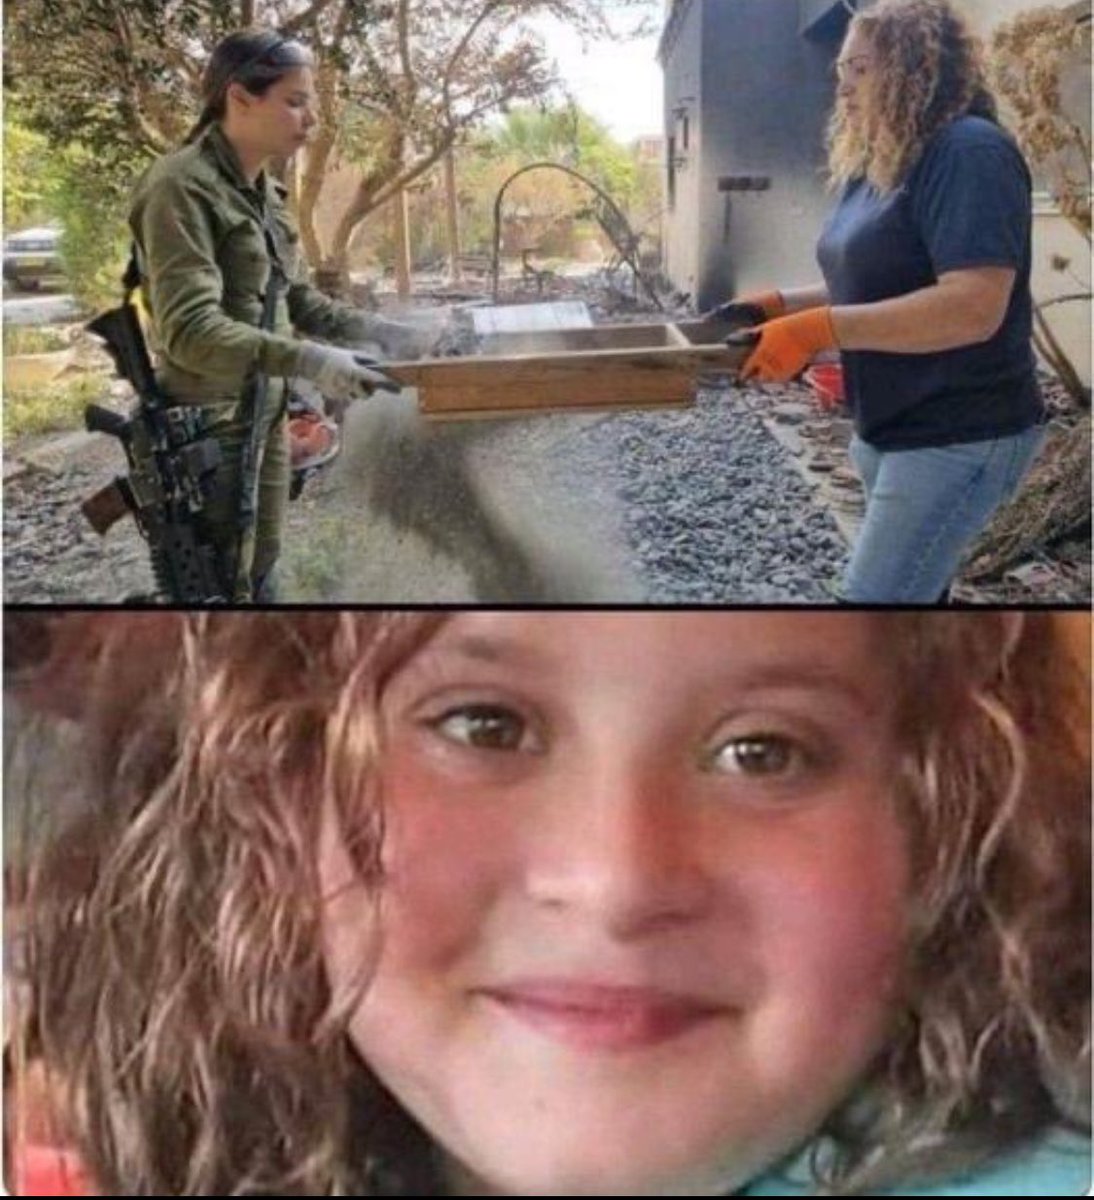 El cuerpo de esta pequeña niña judía fue tan quemado por los terroristas de Hamas que los arqueólogos forenses tardaron más de seis semanas en identificarla. Lo único que queda de Liel Hetzroni, de 12 años, son cenizas y fragmentos de huesos. Que su recuerdo sea de bendición.…